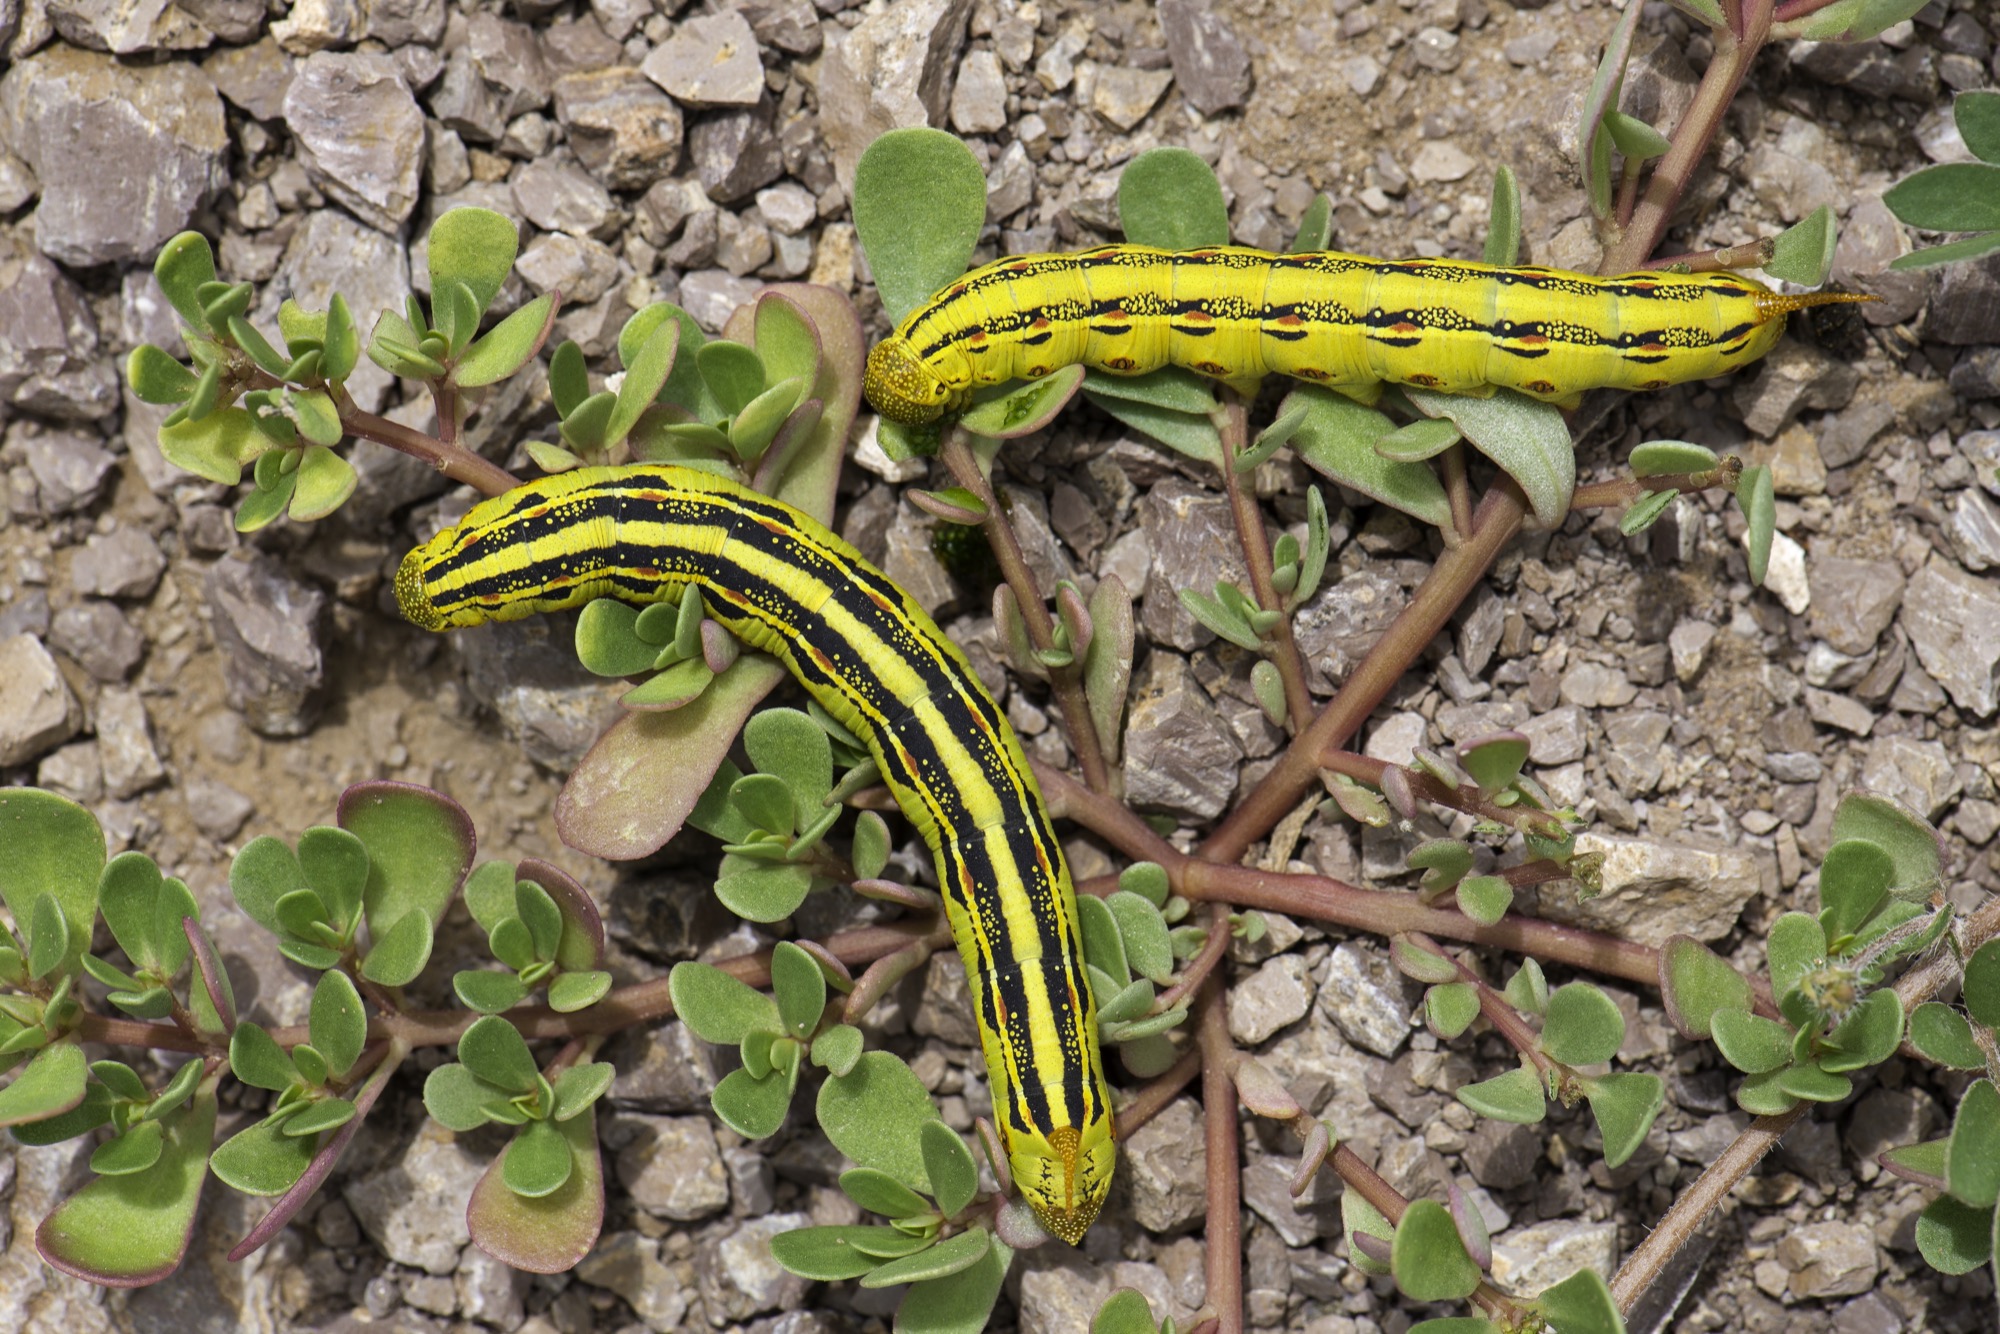 Two bright yellow caterpillars